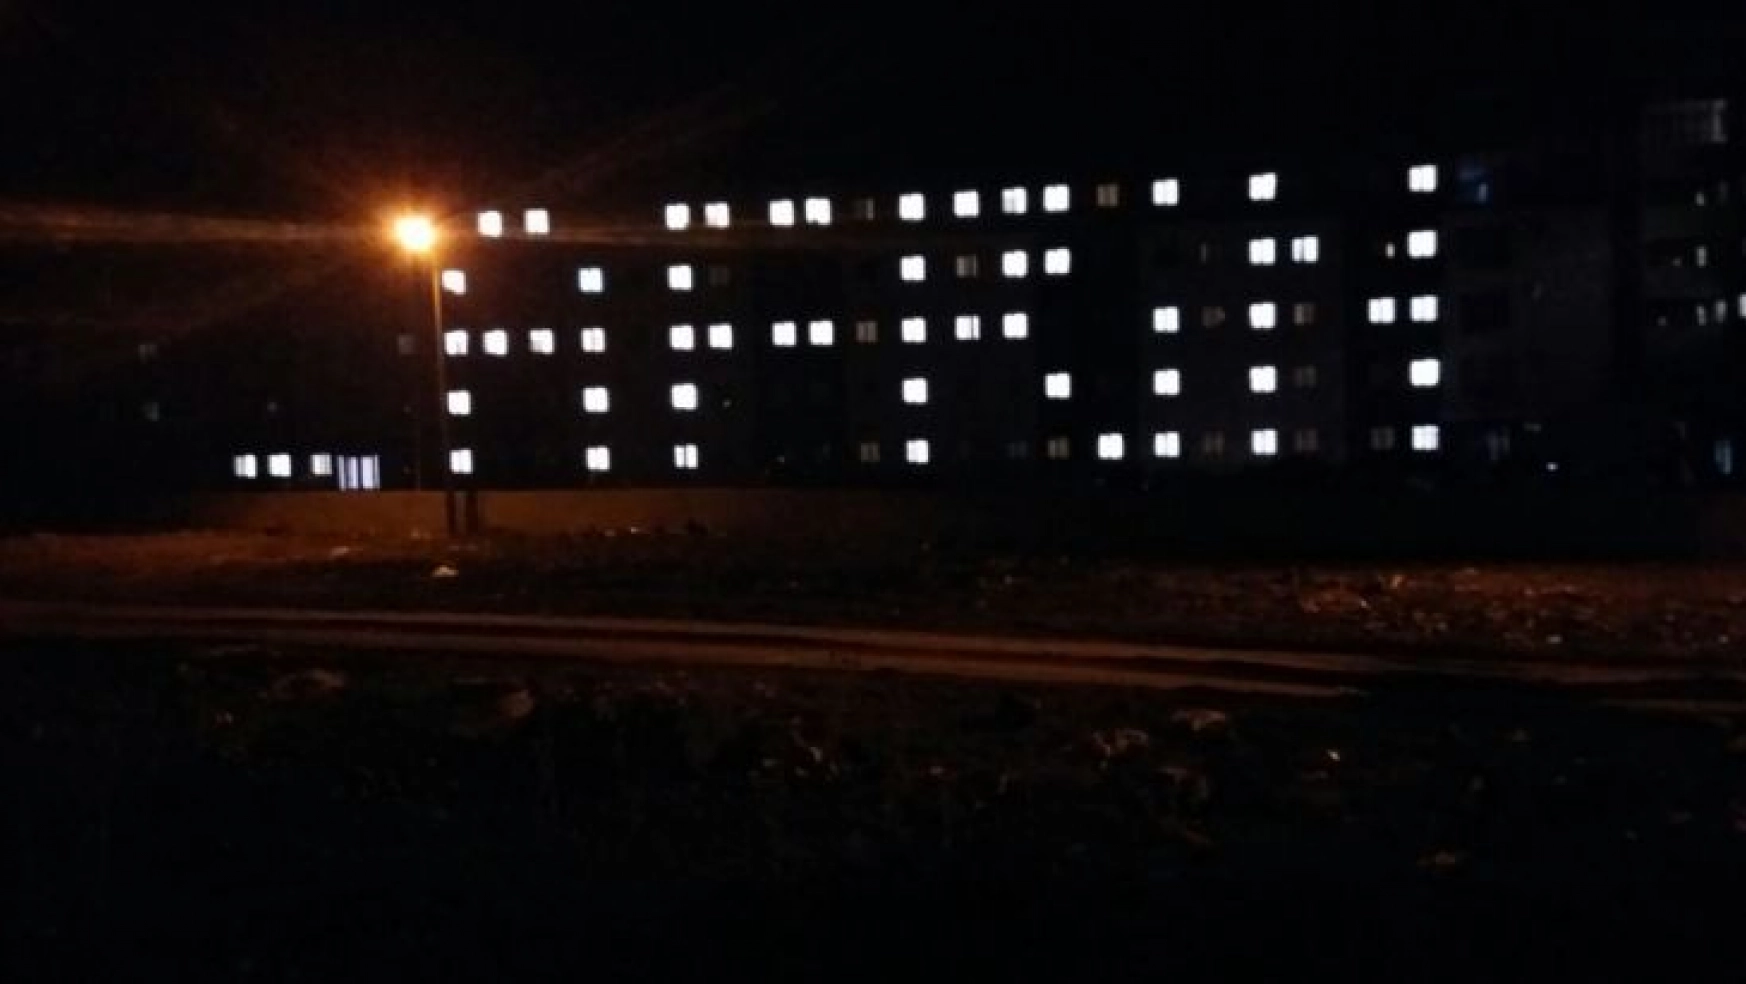 Yurtlarda kalan öğrenciler oda ışıklarıyla 'Afrin' yazdı